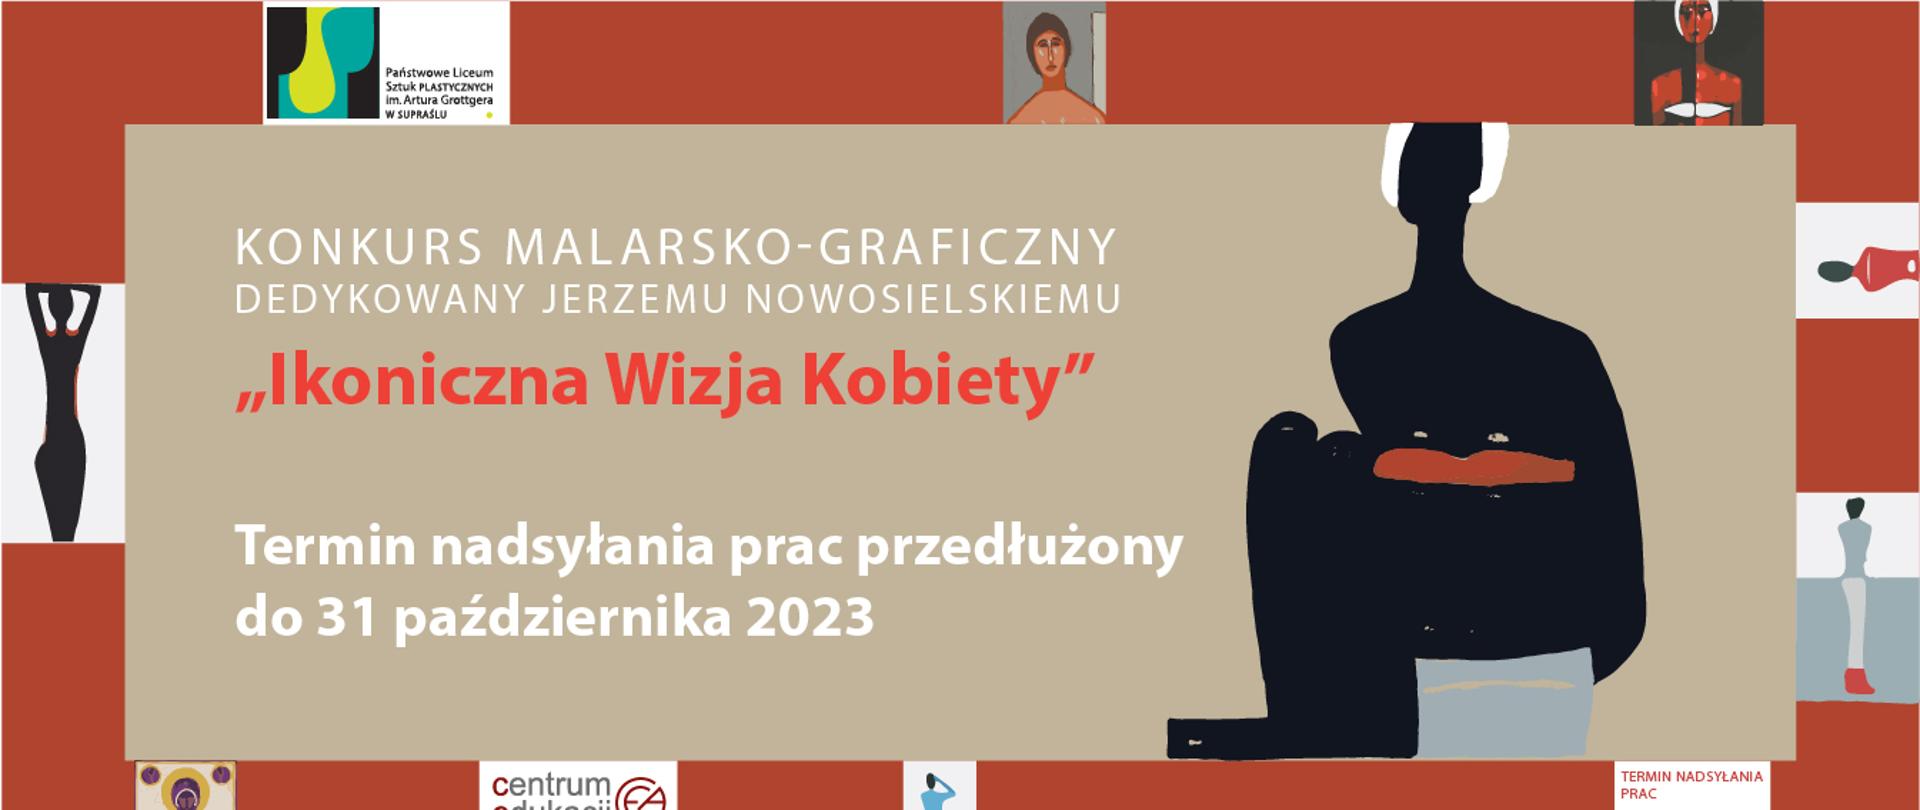 Baner konkursu Ikoniczna Wizja Kobiety informujący o przedłużeniu nadsyłania prac do 31 października 2023